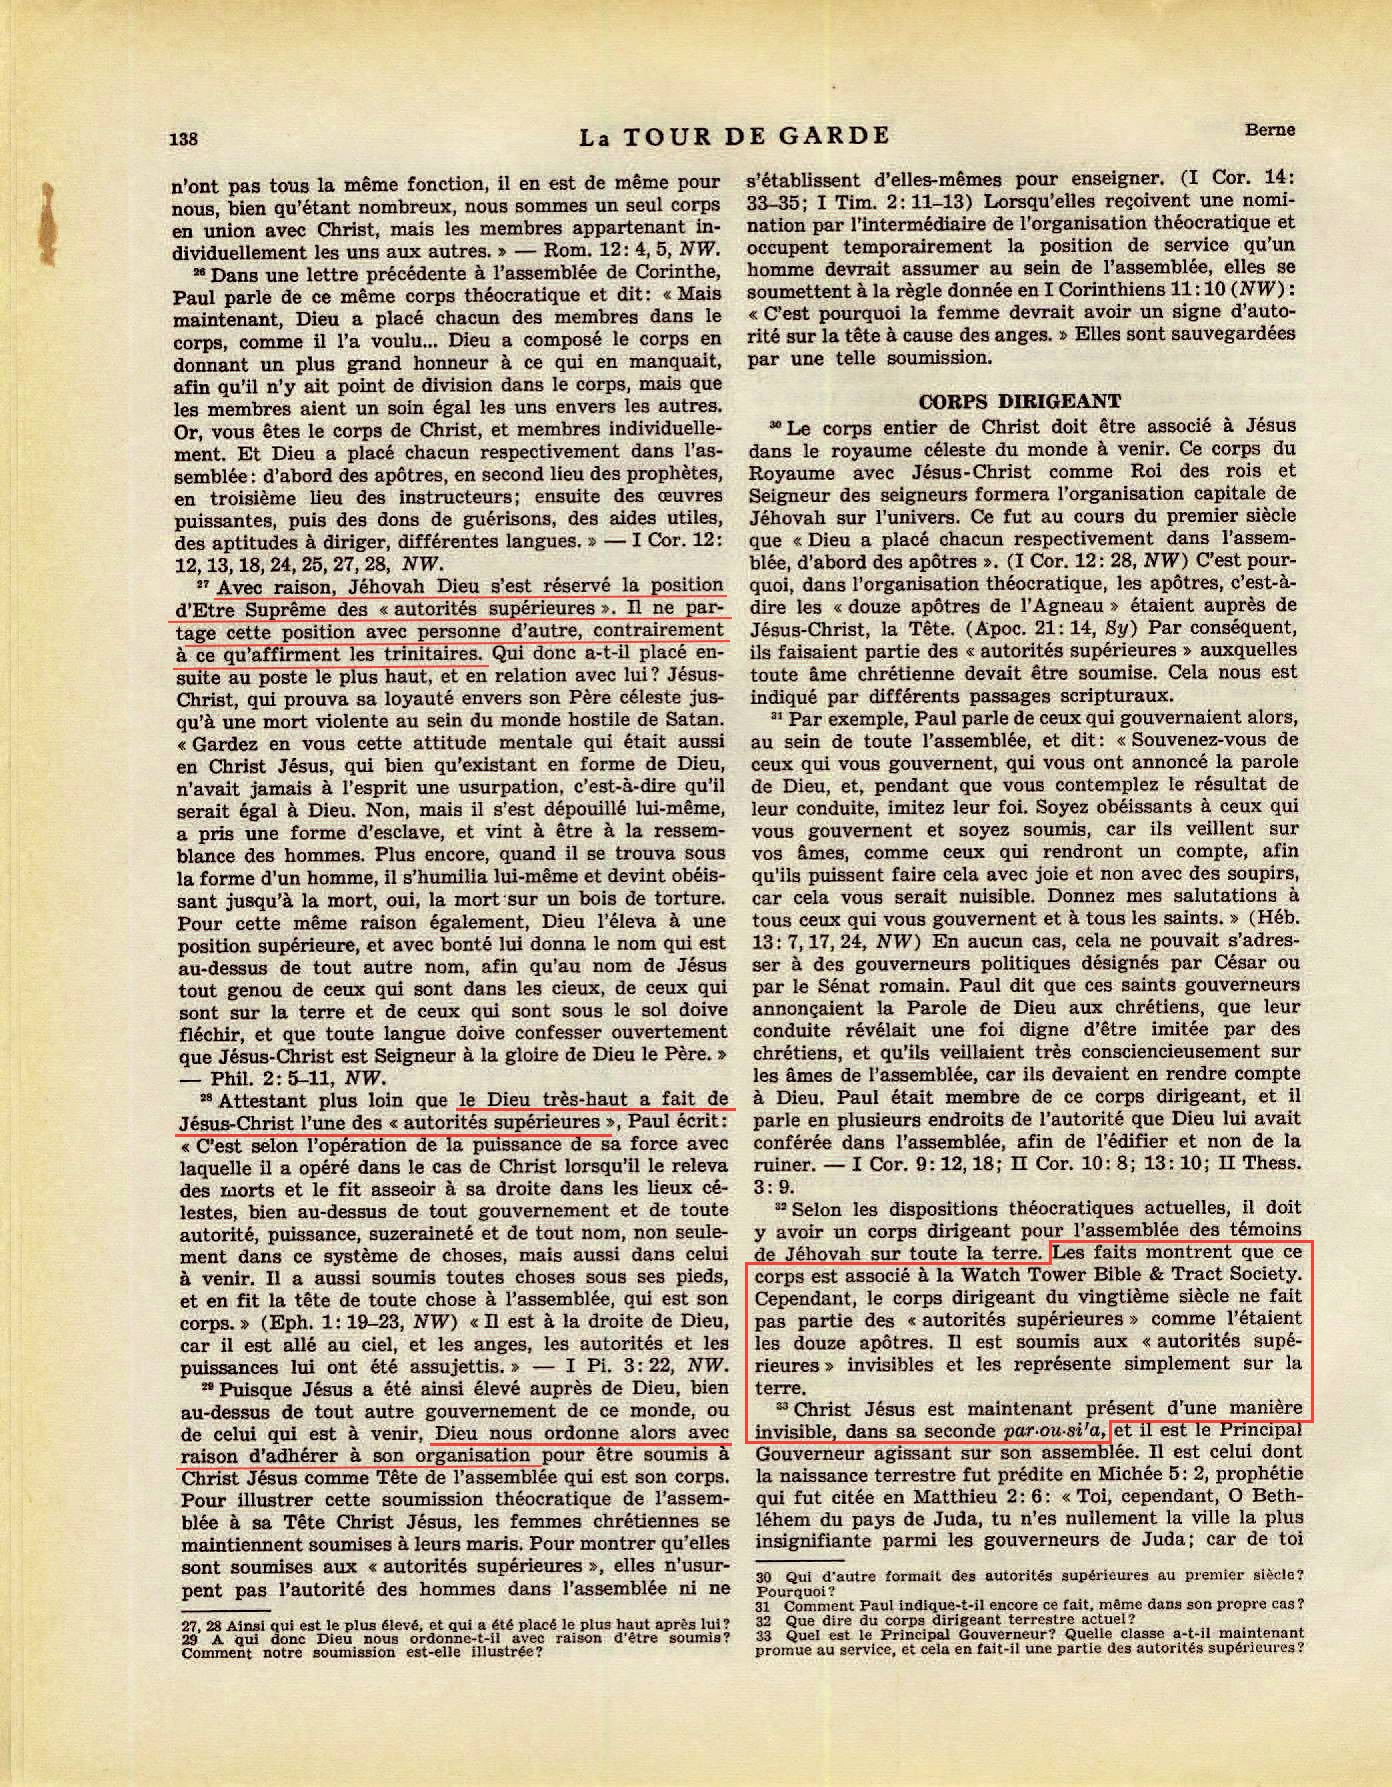 Les autorités supérieures  - Page 2 La-Tour-de-Garde-1-mai-1951-p138